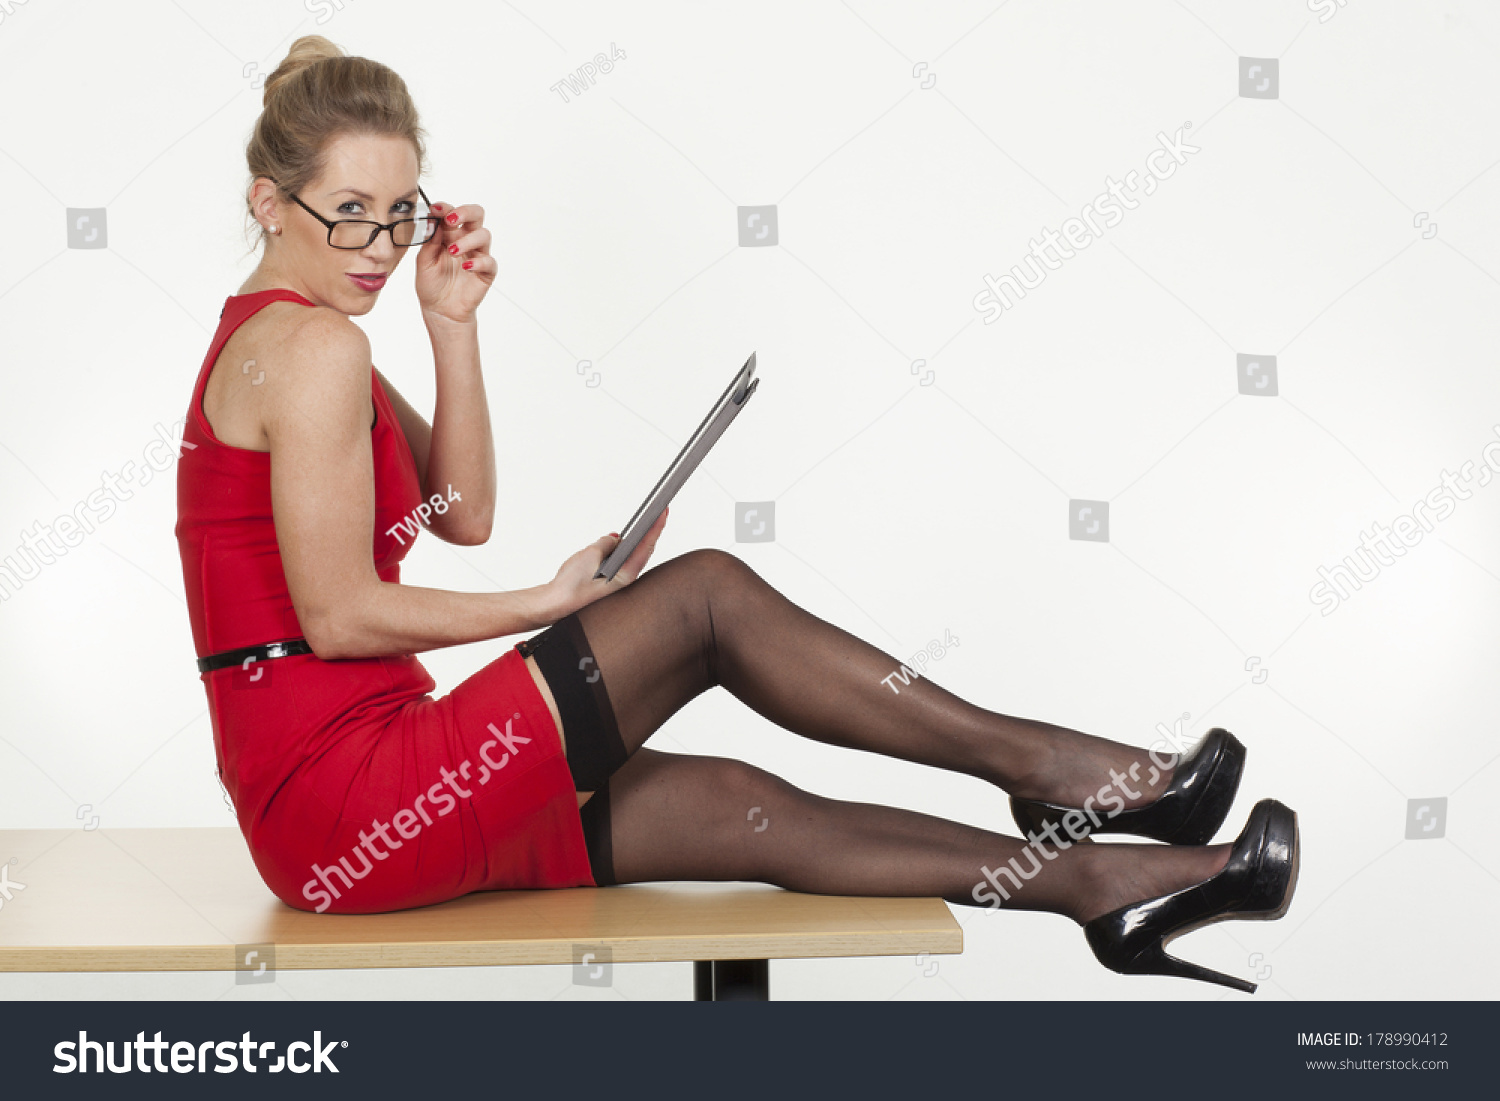 Secretary stockings